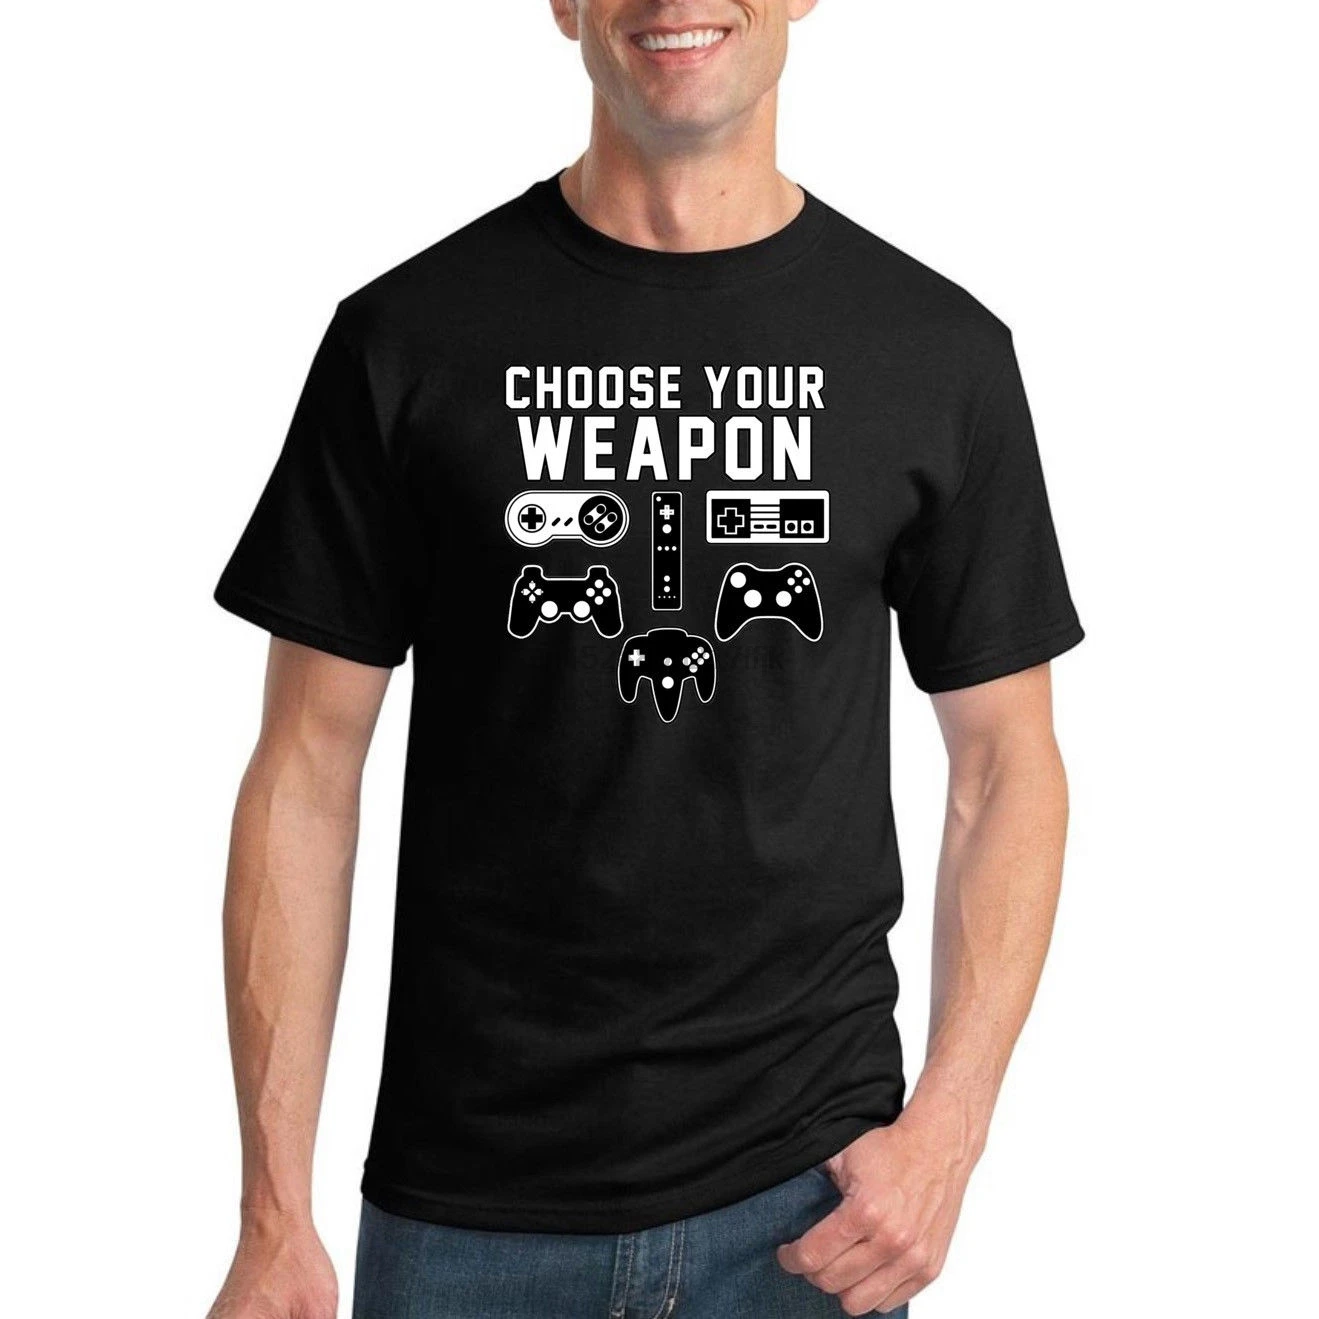 Фото Выберите ваше оружие Мужская видео игра юмором футболка графическая смешной